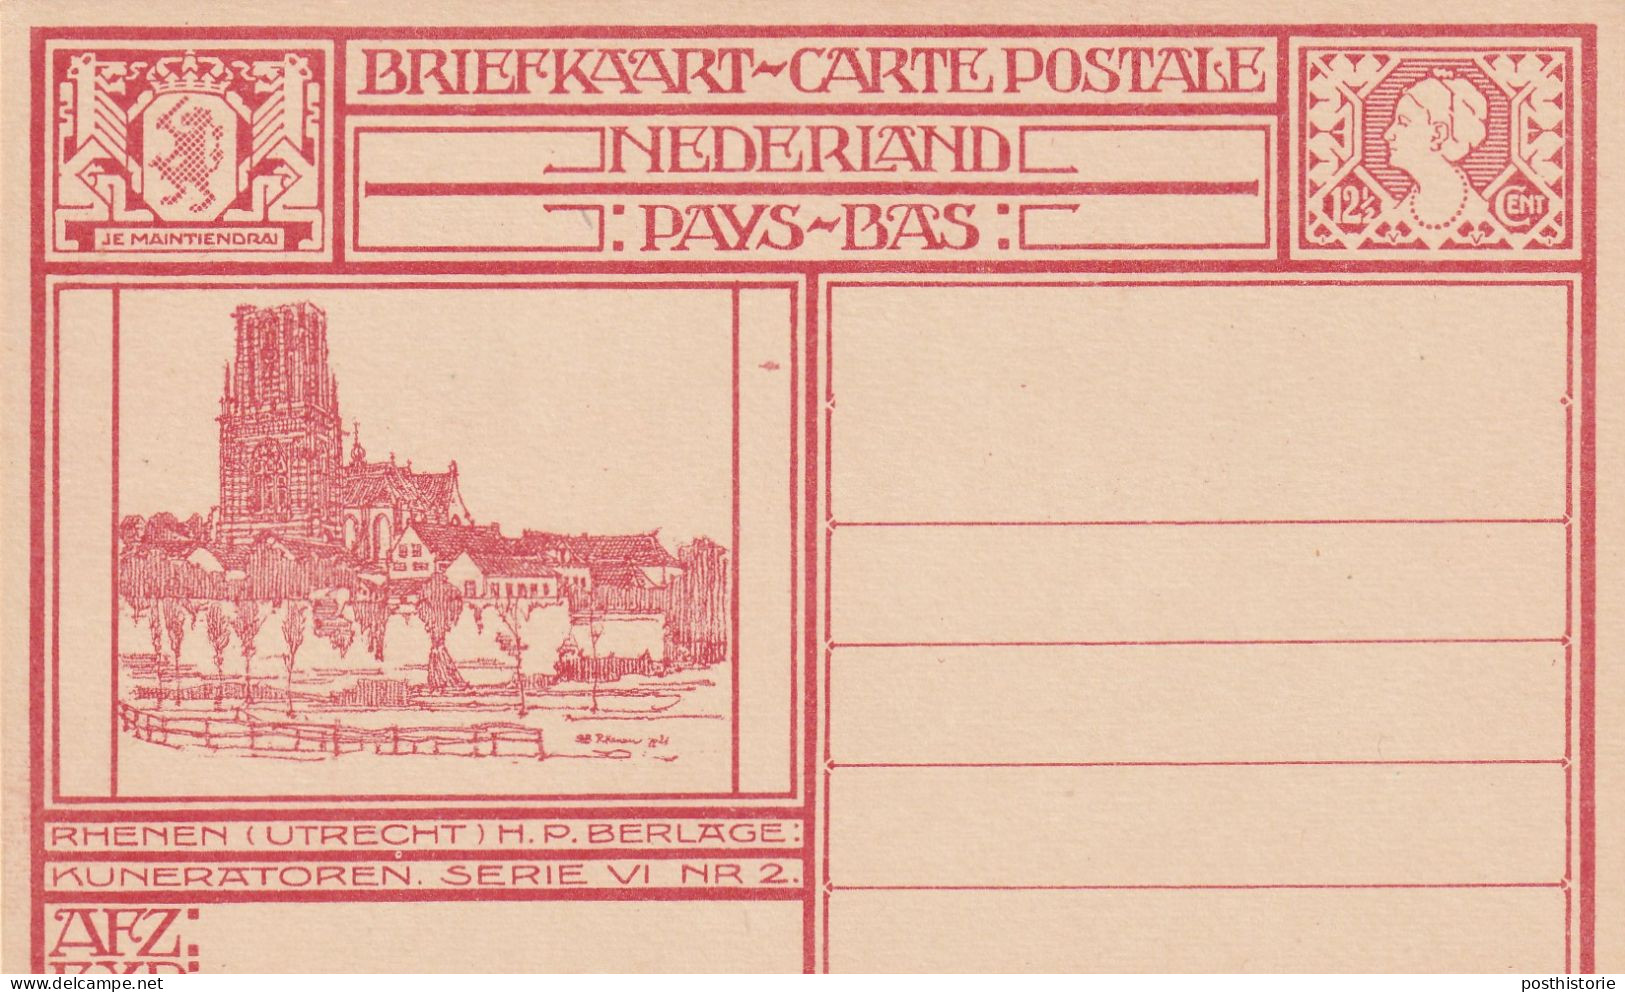 11 ongebruikte geillustreerde briefkaarten 1924  Geuzendam 199